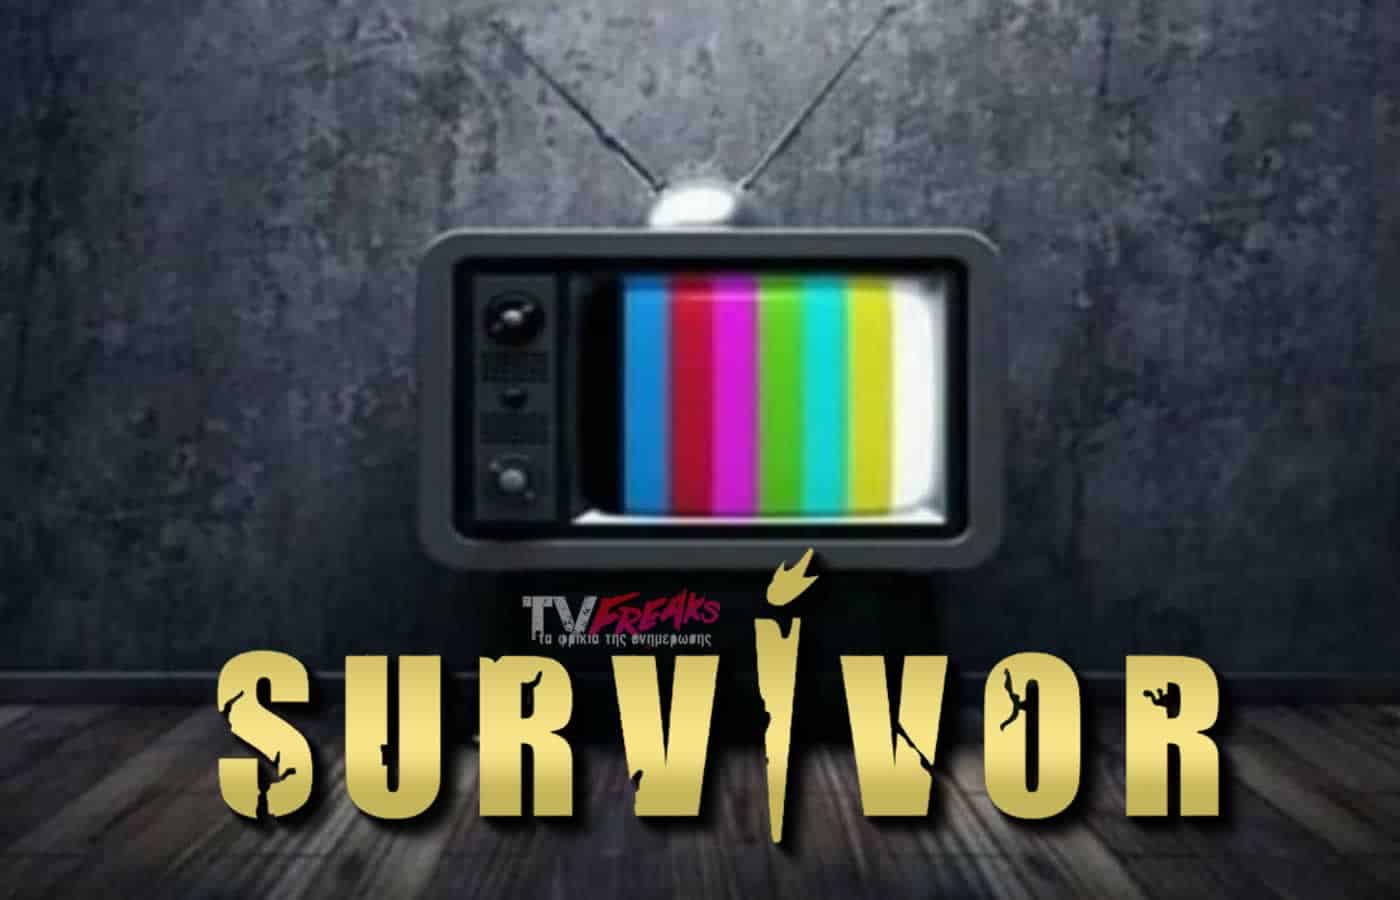 Σαρωτική ήταν η πρεμιέρα που έκανε το Survivor All Star στον ΣΚΑΪ, κάτι το οποίο ήταν πραγματικά λίγο πολύ αναμενόμενο για το ριάλιτι